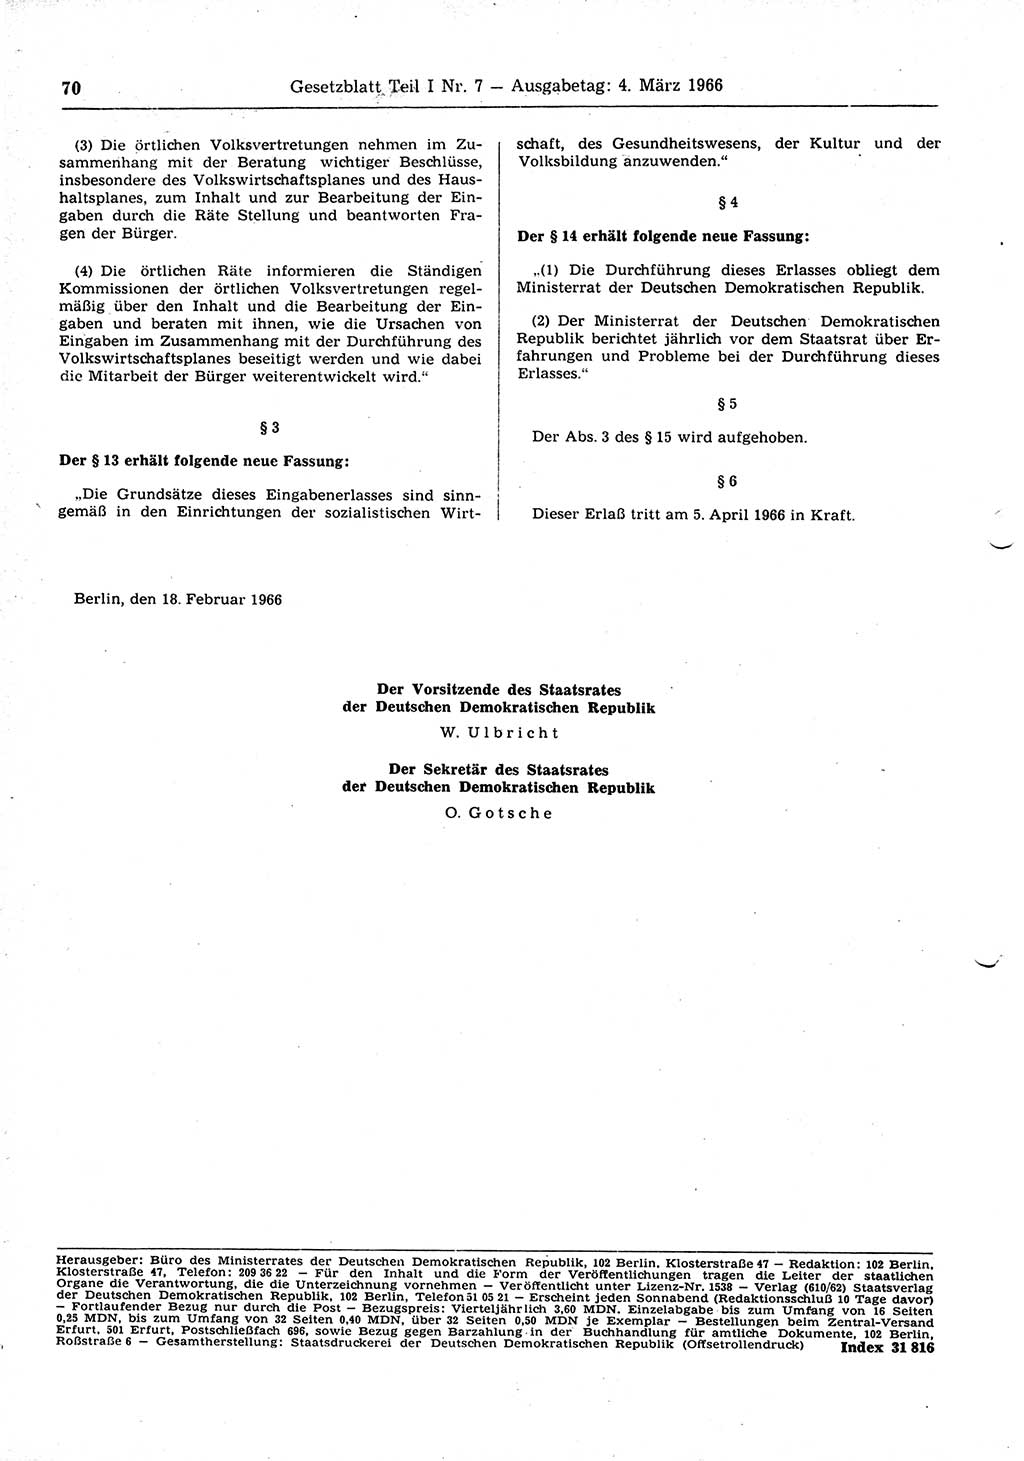 Gesetzblatt (GBl.) der Deutschen Demokratischen Republik (DDR) Teil Ⅰ 1966, Seite 70 (GBl. DDR Ⅰ 1966, S. 70)